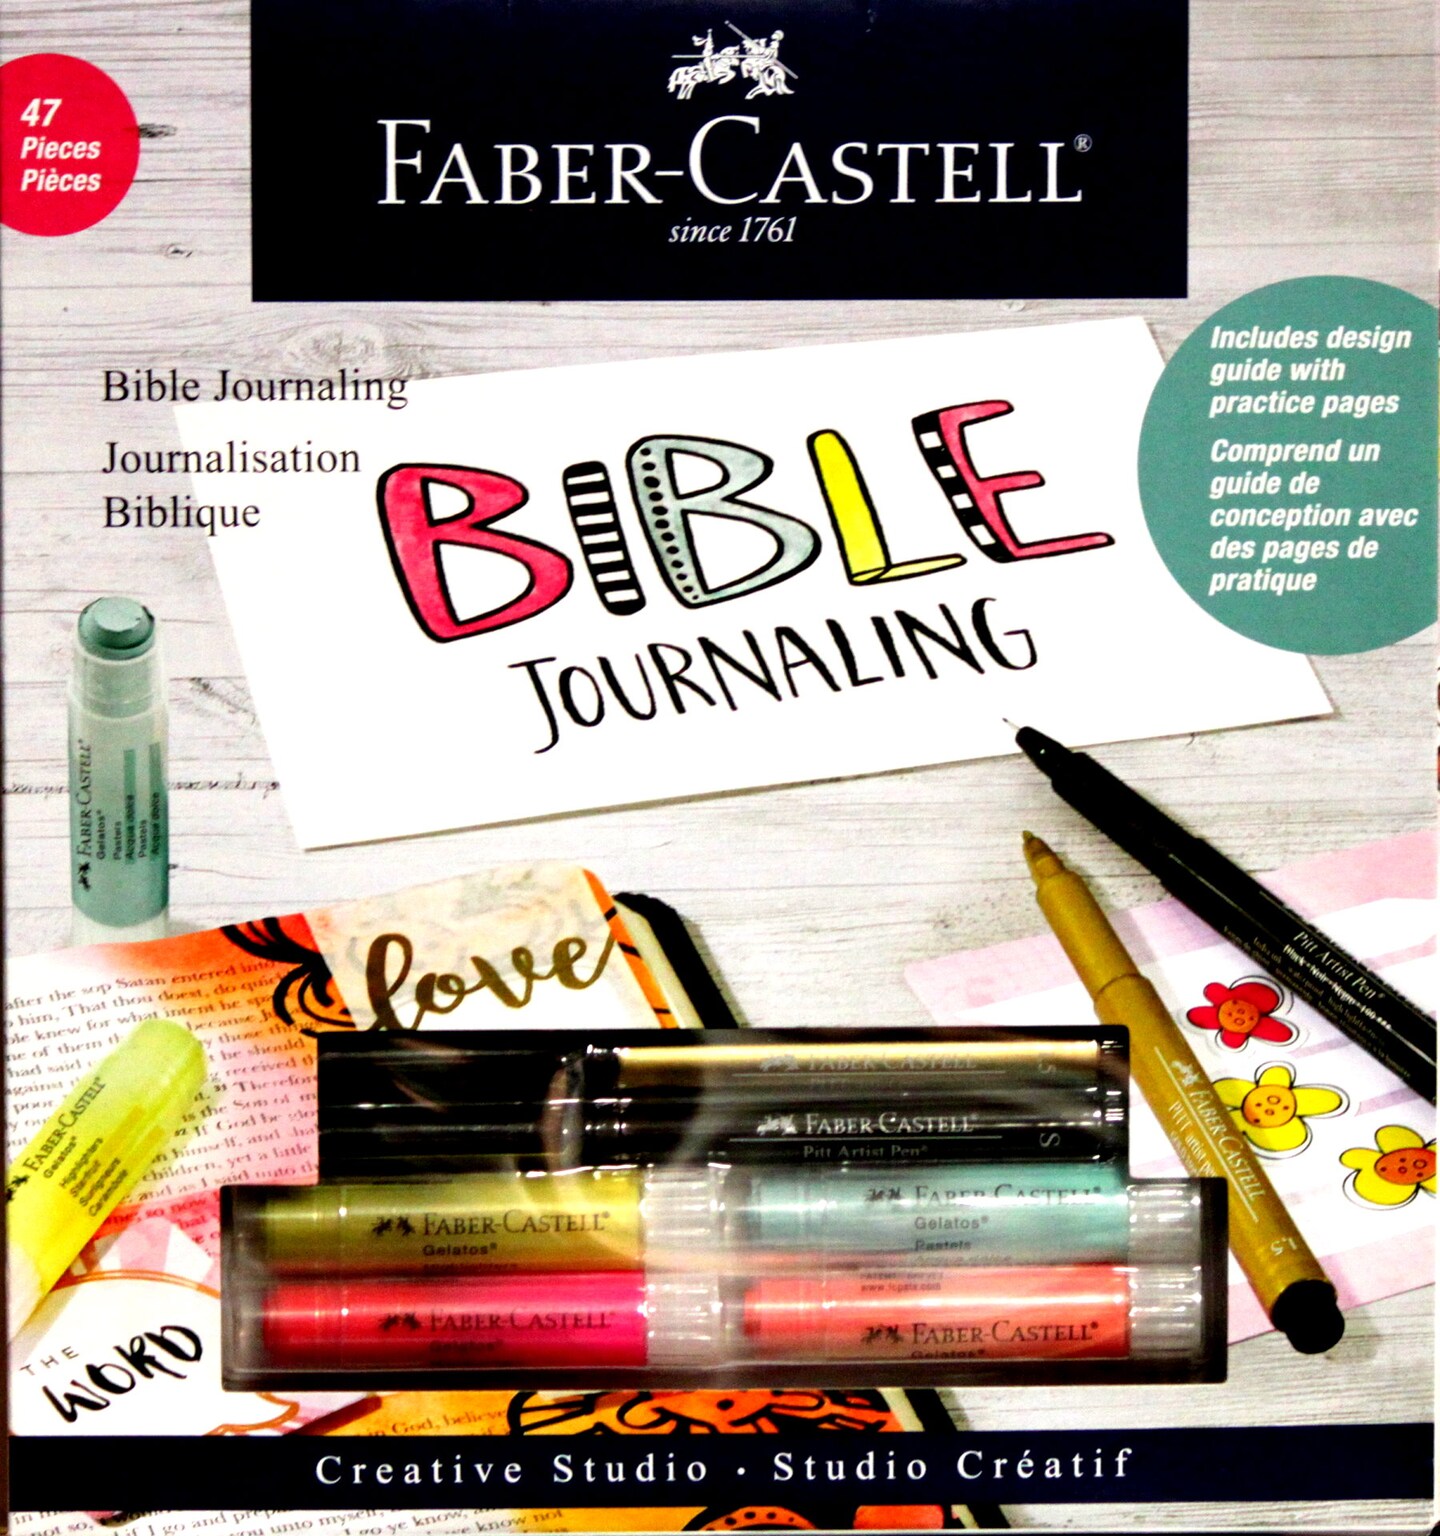 Bible journaling set